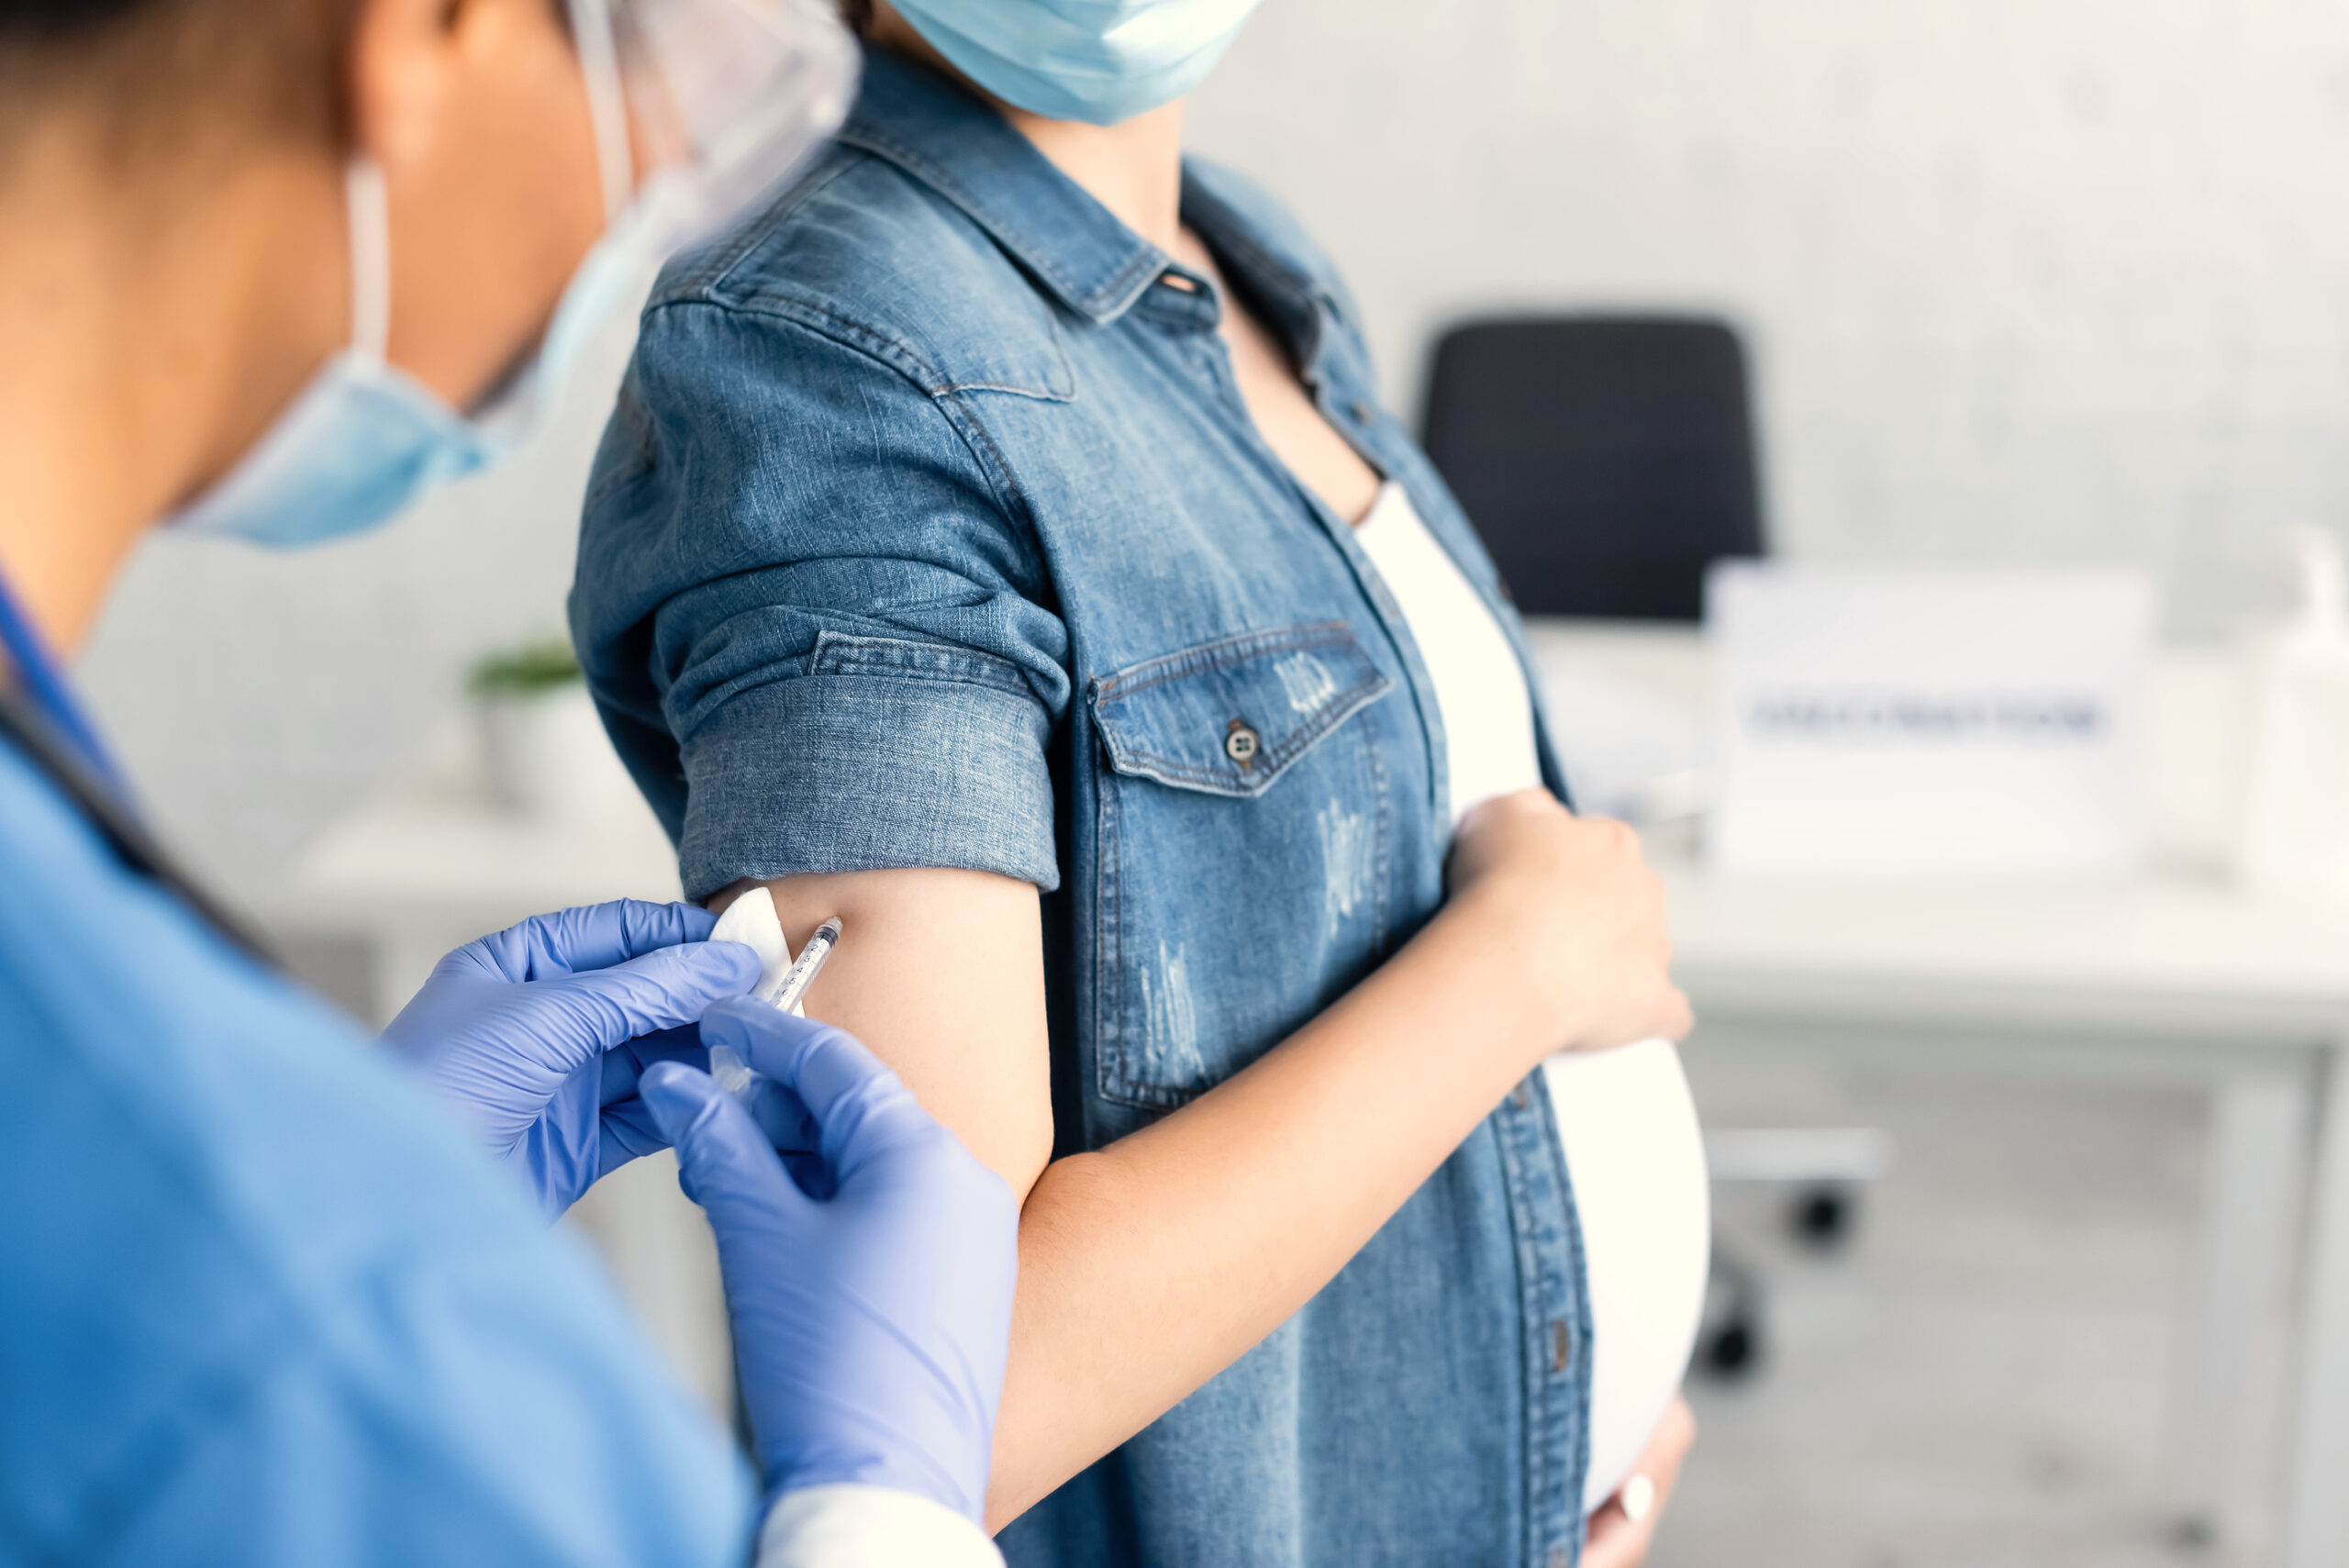 La vacuna materna puede prevenir el estreptococo B en los bebés